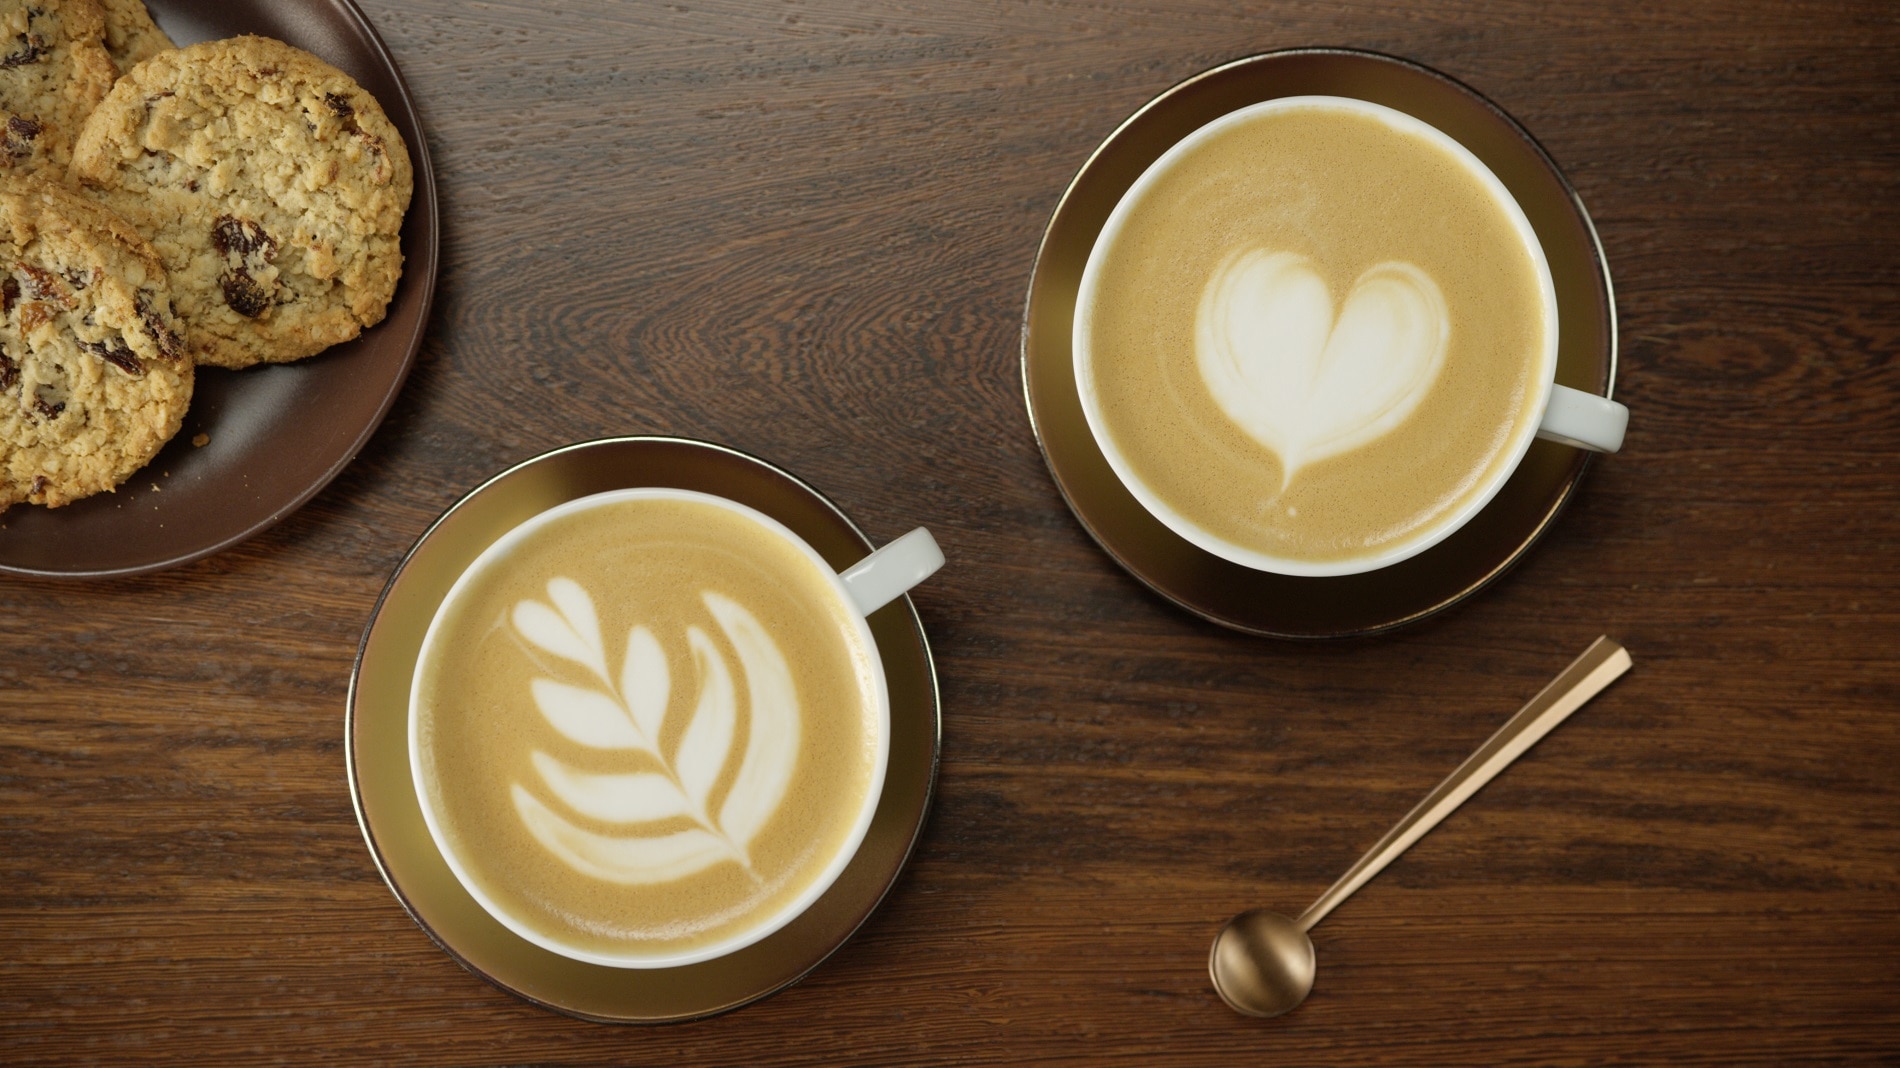 Latte Heart by Nespresso